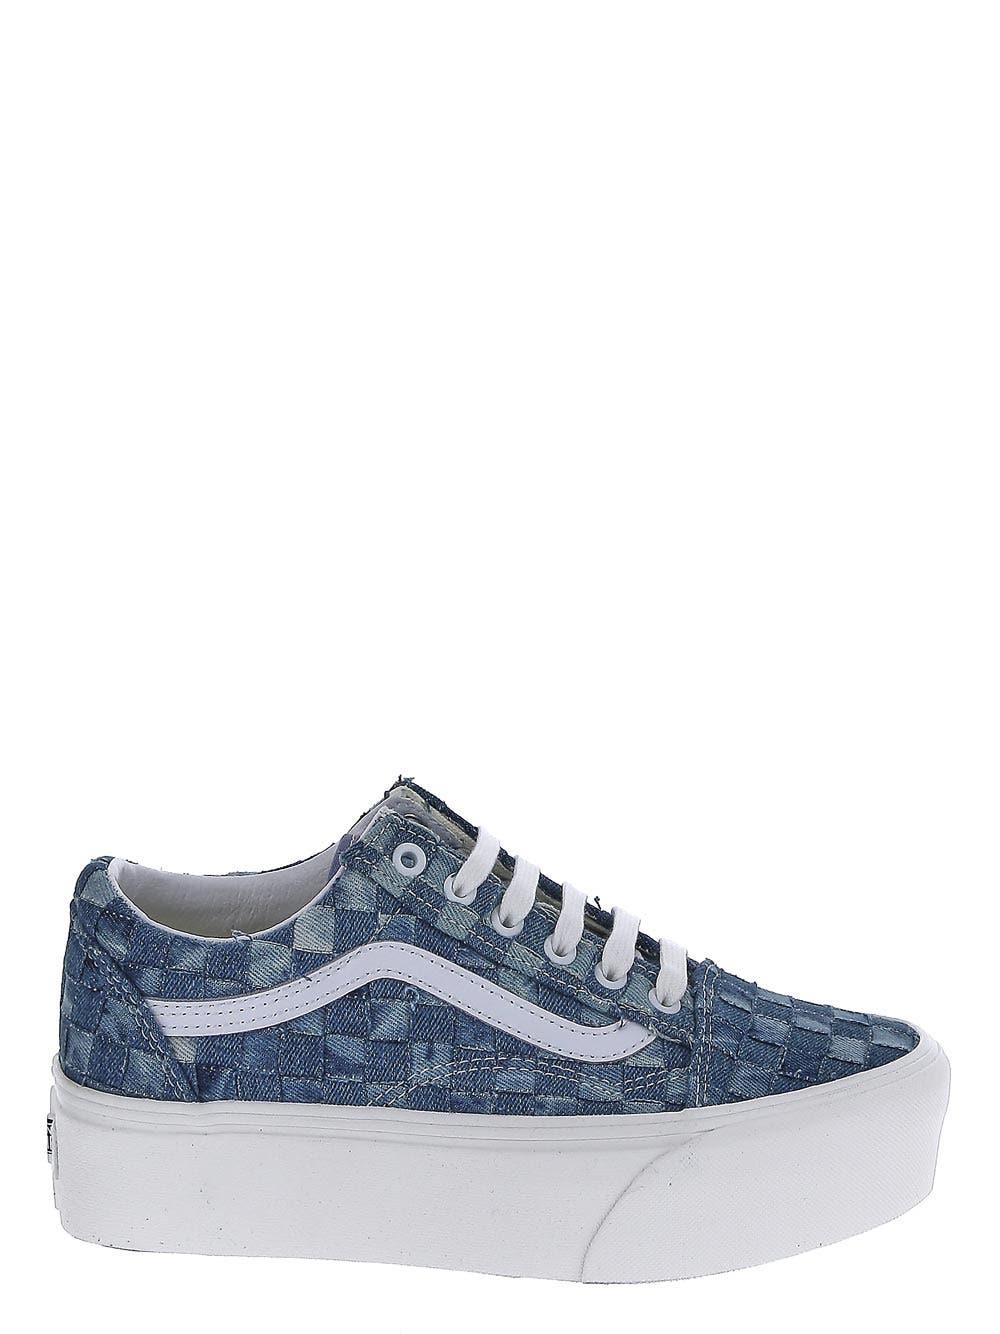 Vans Denim Sneakers in Blue | Lyst